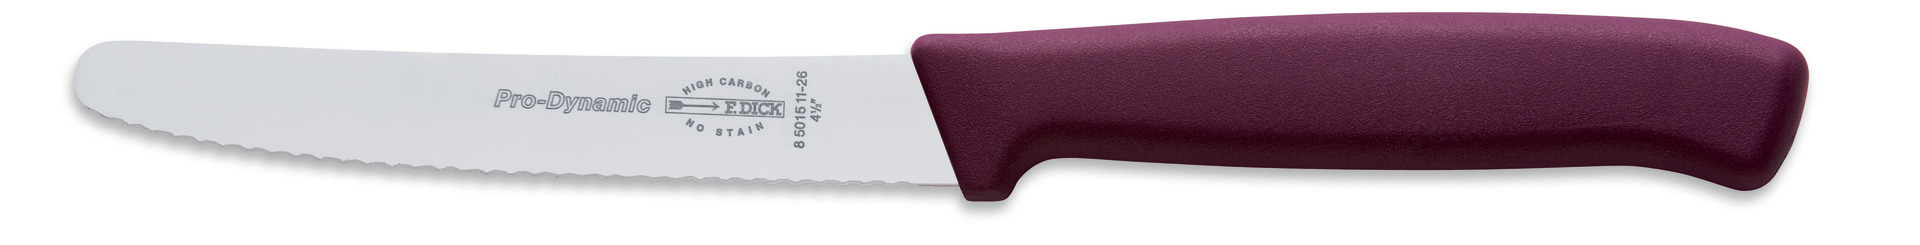 Allzweckmesser Klingenlänge 110 mm Wellenschliff / violetter Griff